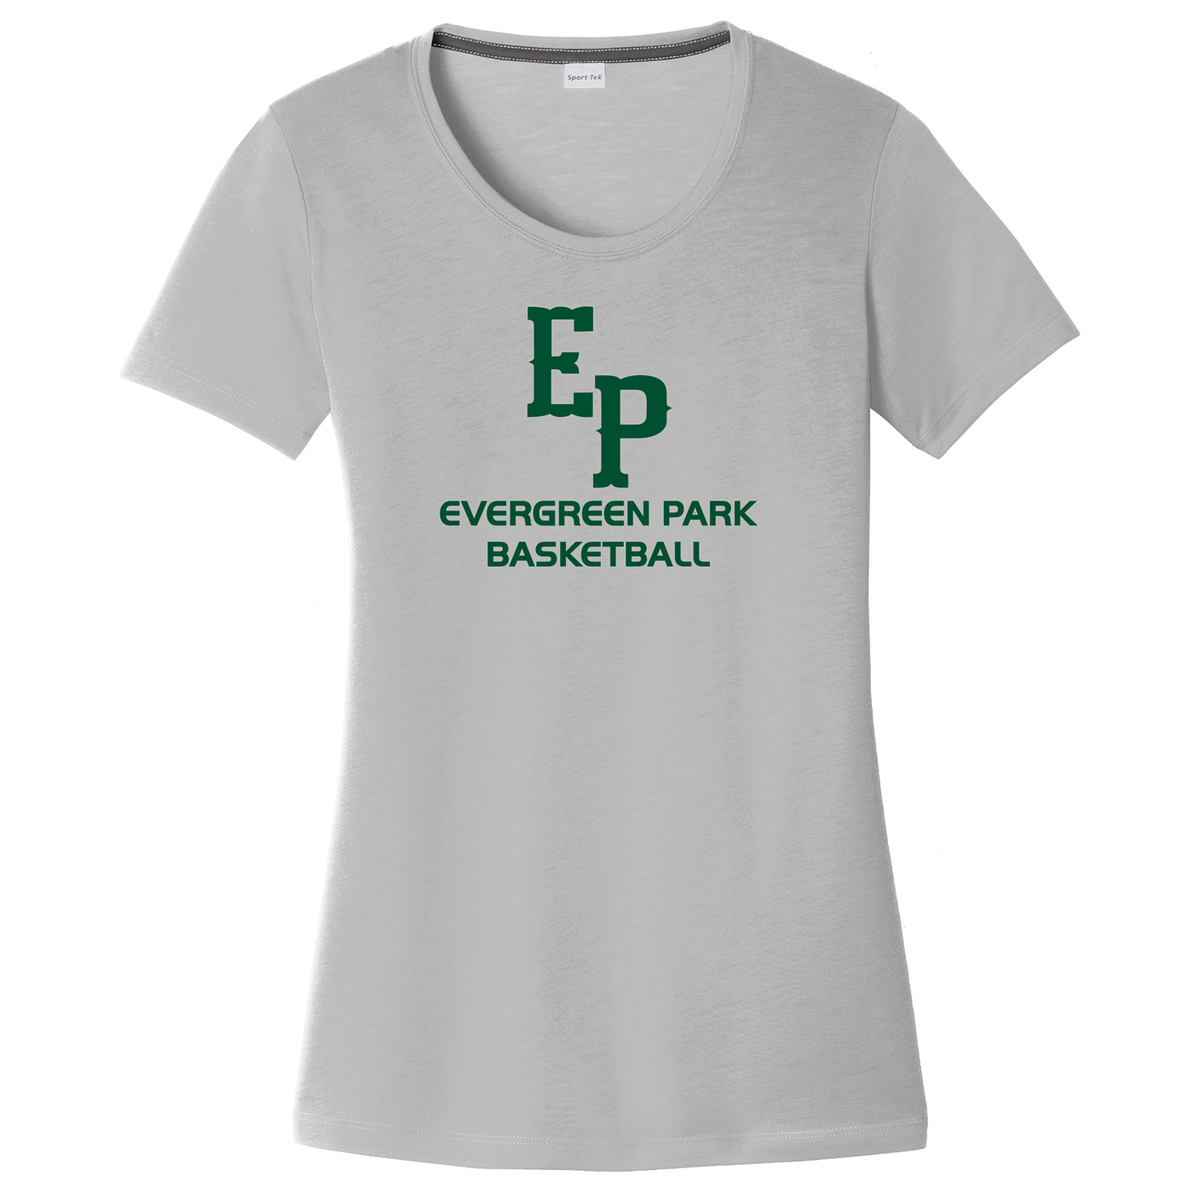 Evergreen Park Basketball Women's CottonTouch Performance T-Shirt